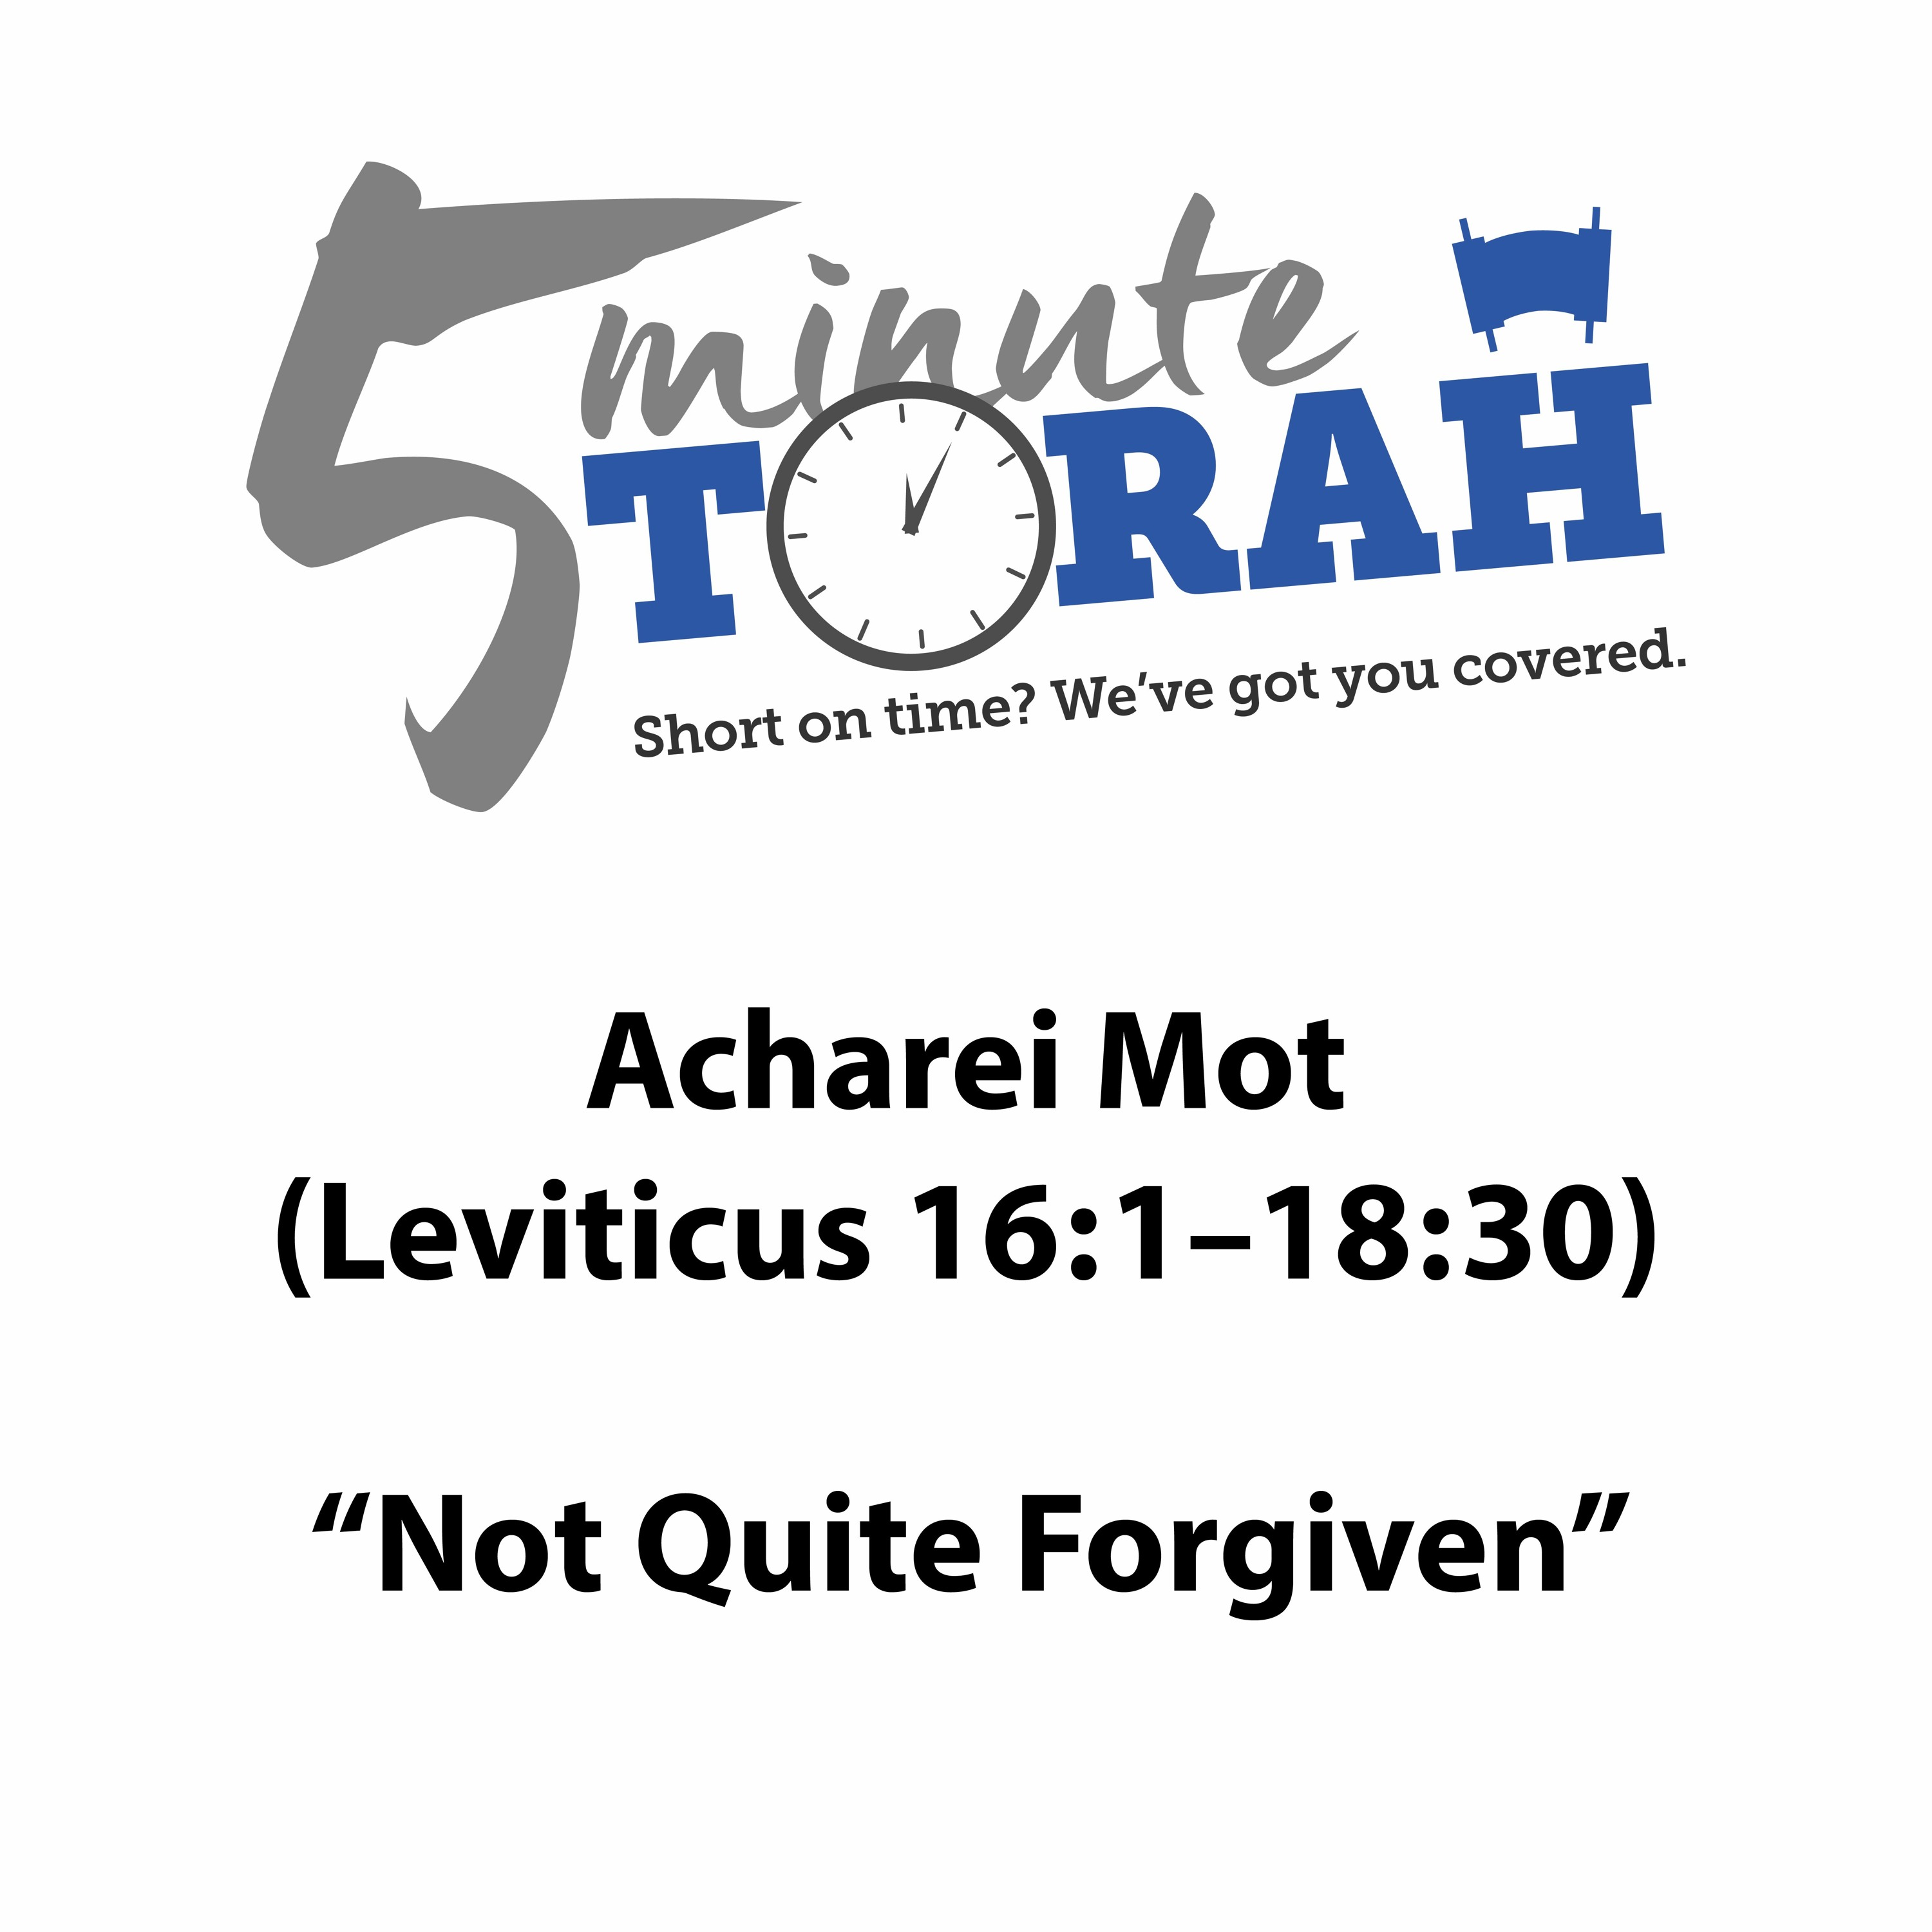 Acharei Mot - "Not Quite Forgiven"